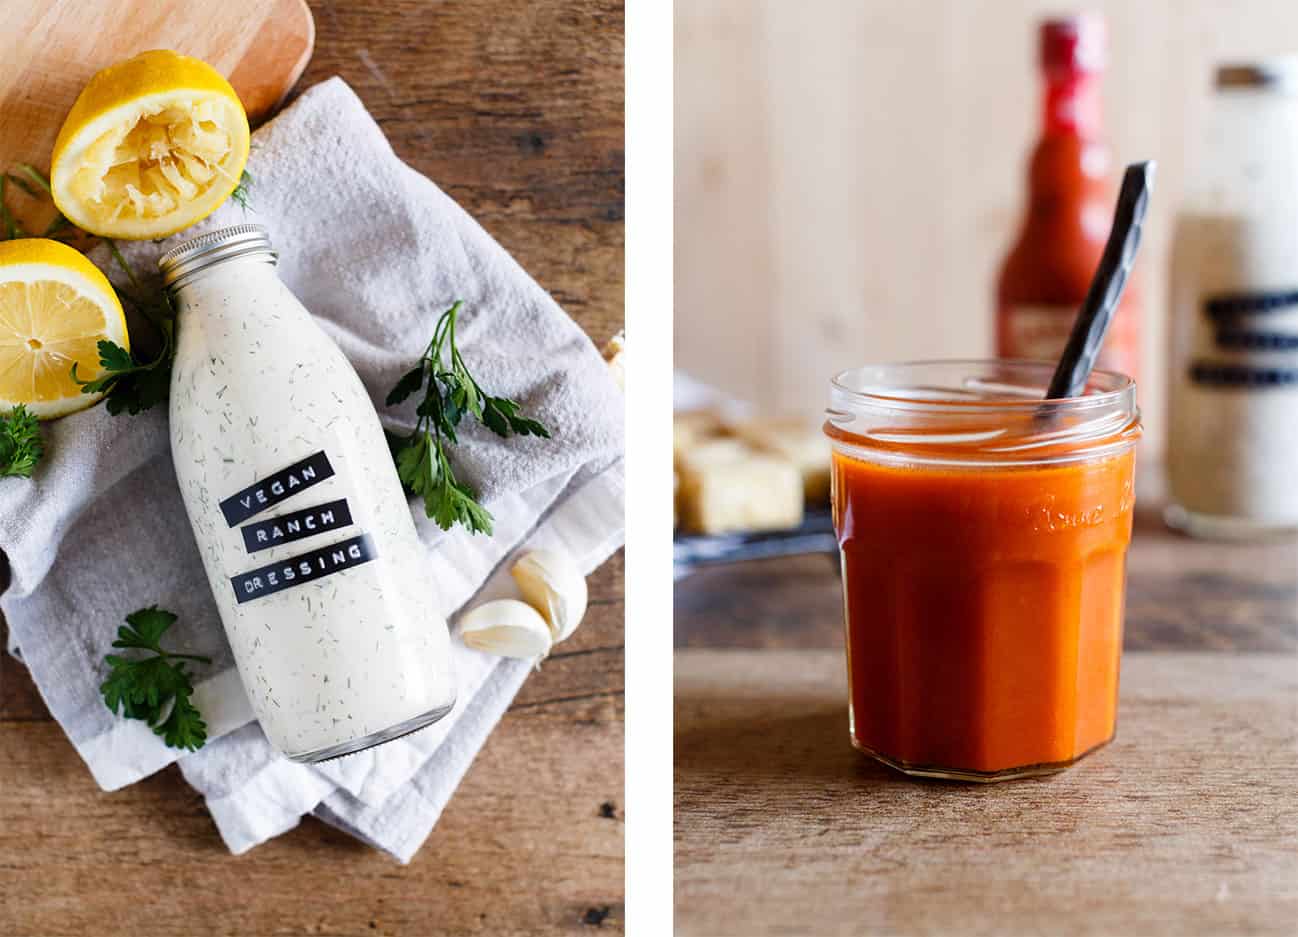 Left: Bottle of Homemade Vegan Ranch Dressing. Right: Jar of Vegan Buffalo Sauce.